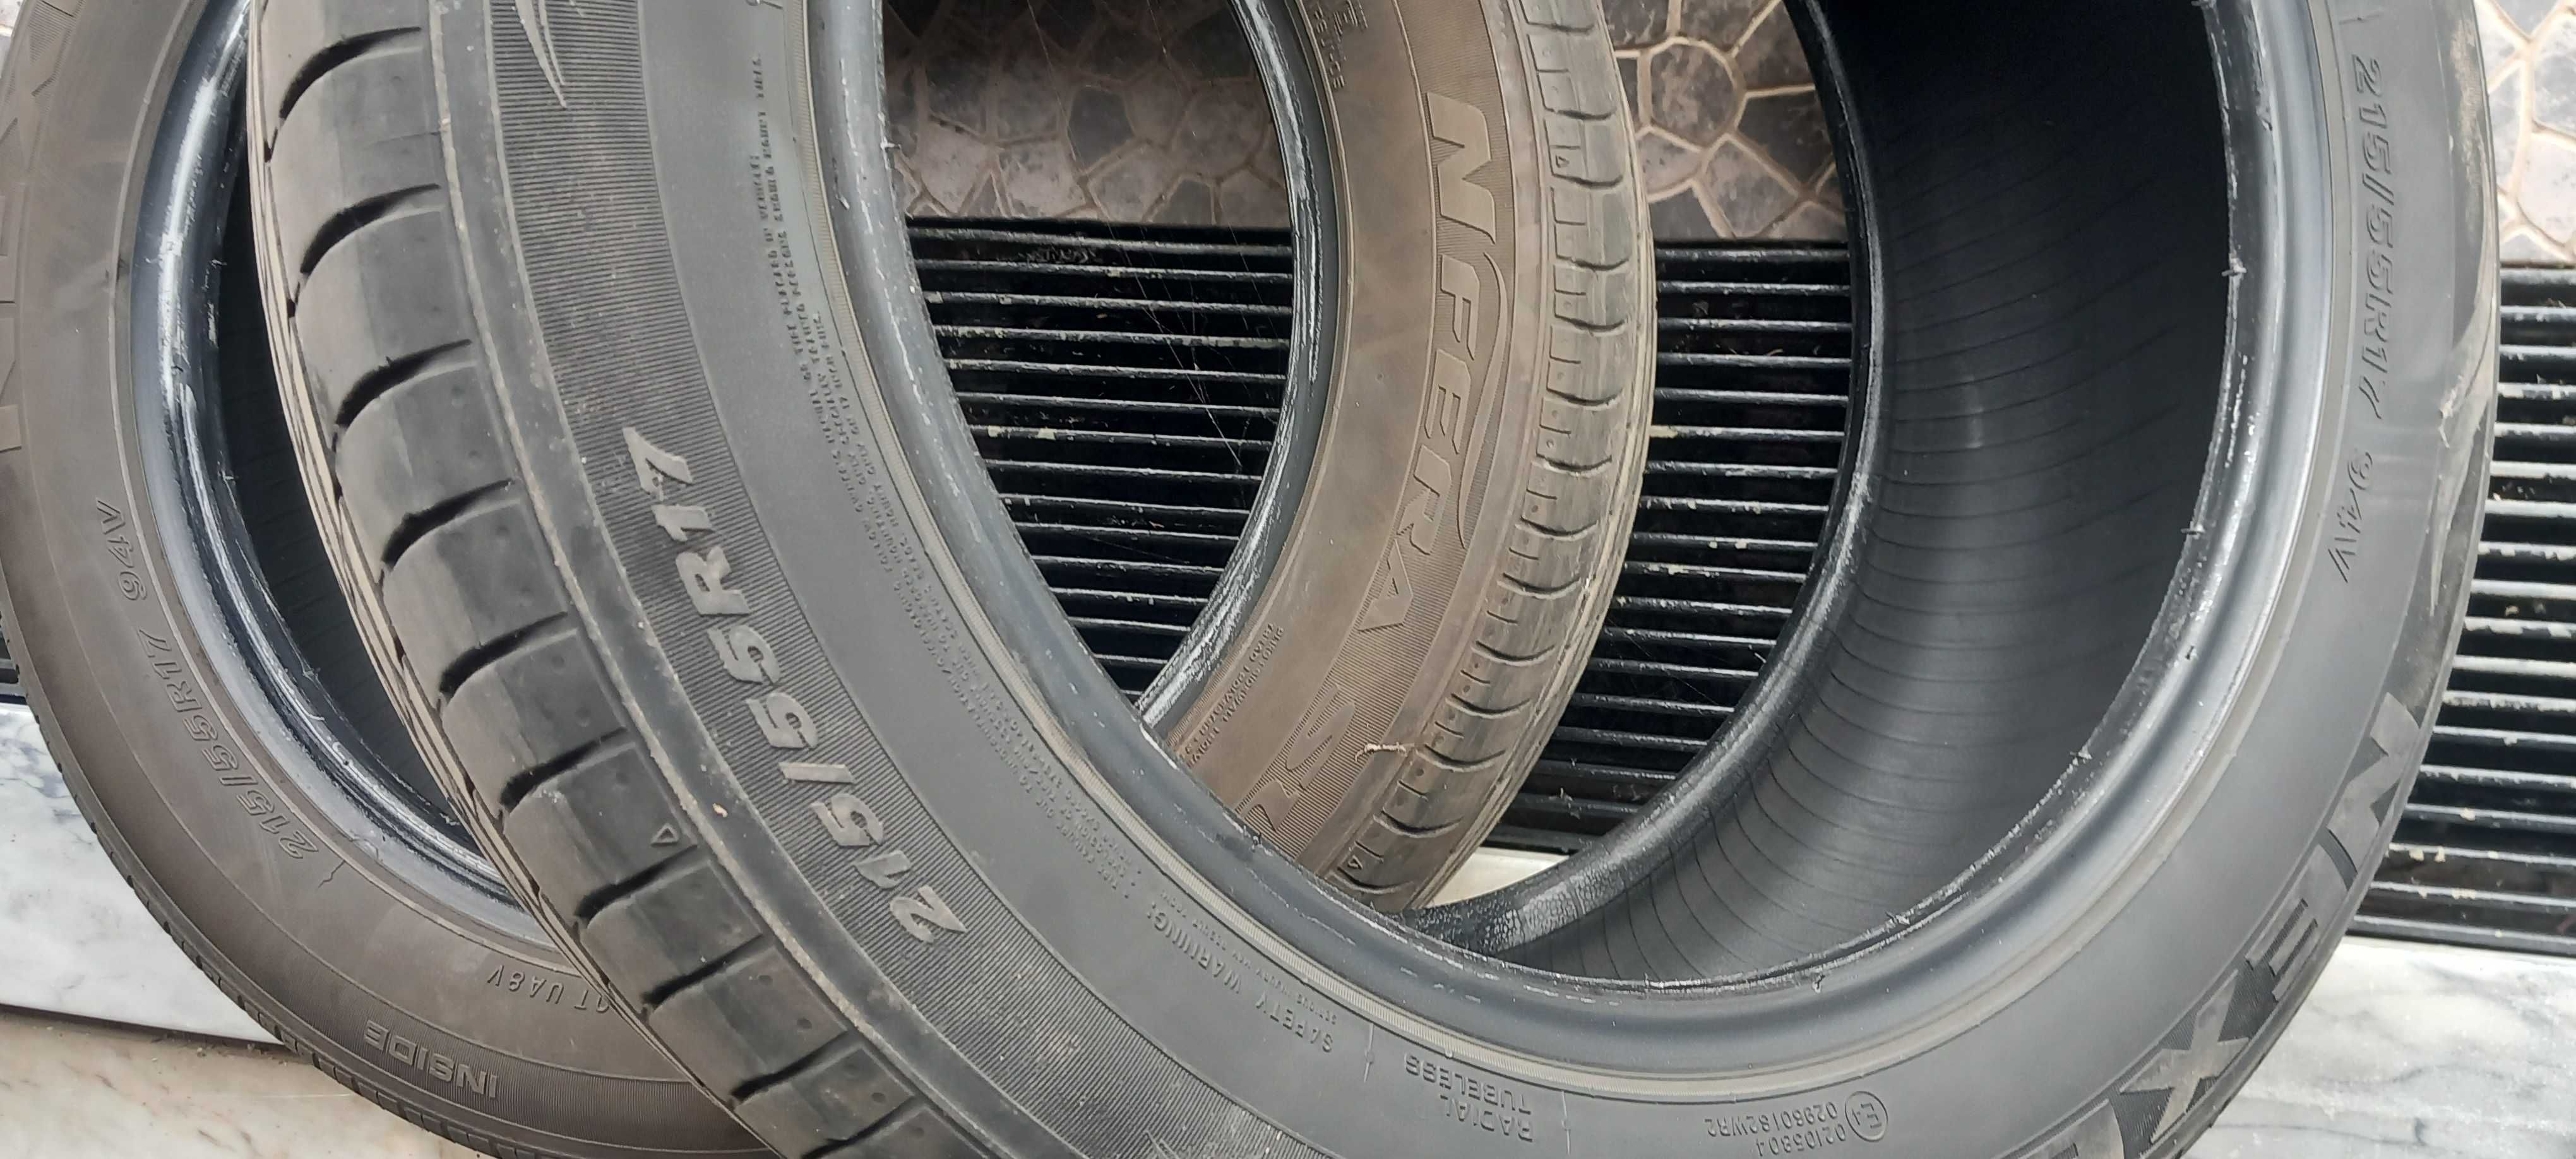 2 pneus usados  marca nfera 215/55r17